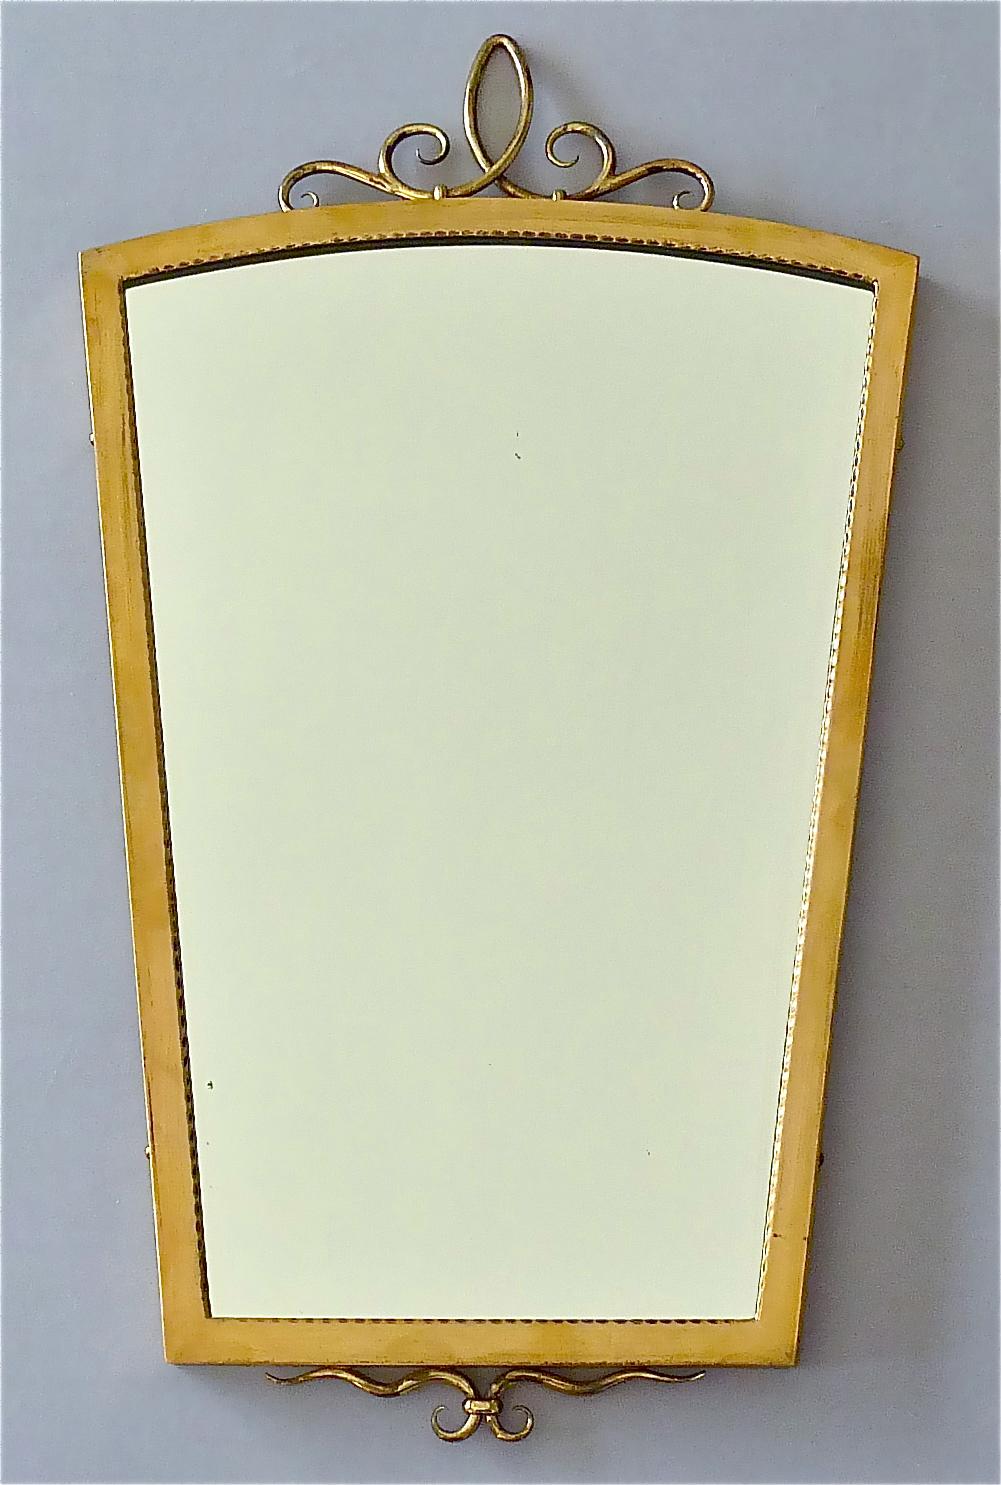 Seltene Midcentury Gio Ponti Zuschreibung italienischen Wandspiegel, Italien 1950er Jahre. Der prächtige Vintage-Spiegel besteht aus vergoldetem Messing und originalem Spiegelglas und hat eine schöne obere und untere Messingverzierung ganz im Stil